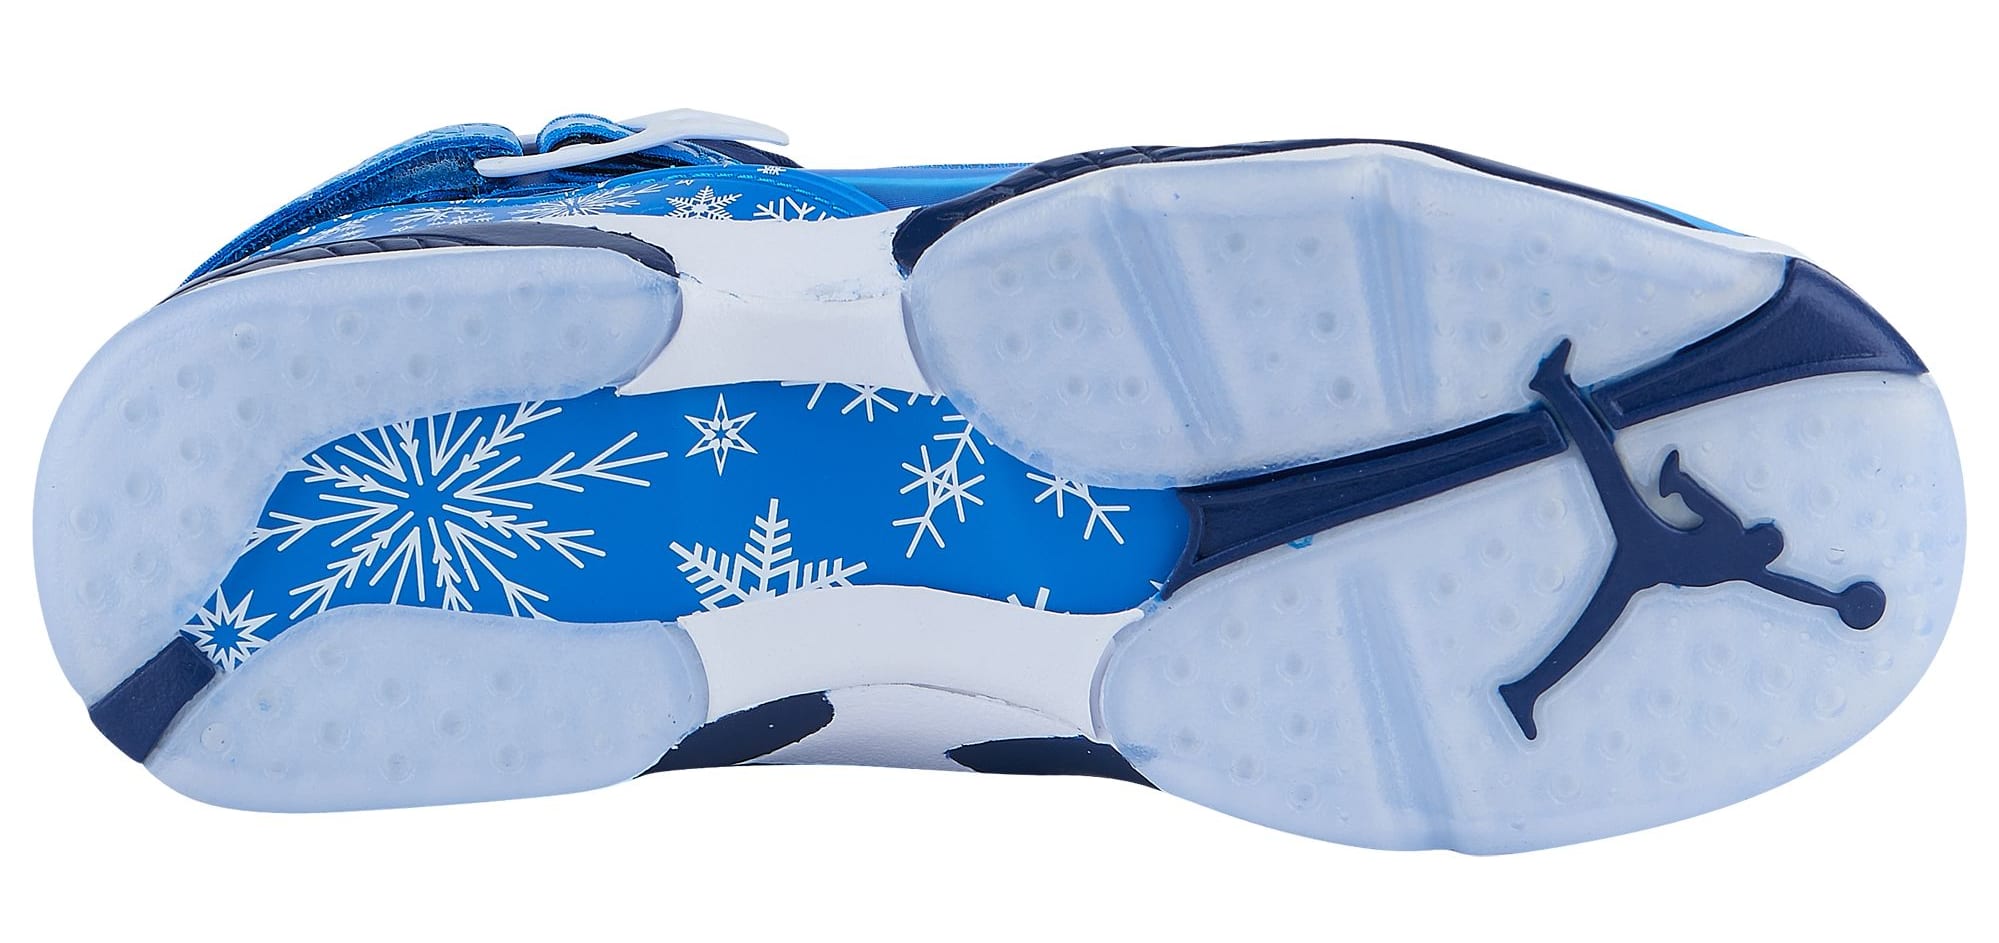 Air Jordan 8 VIII Snowflake Release Date 305368-400 Sole